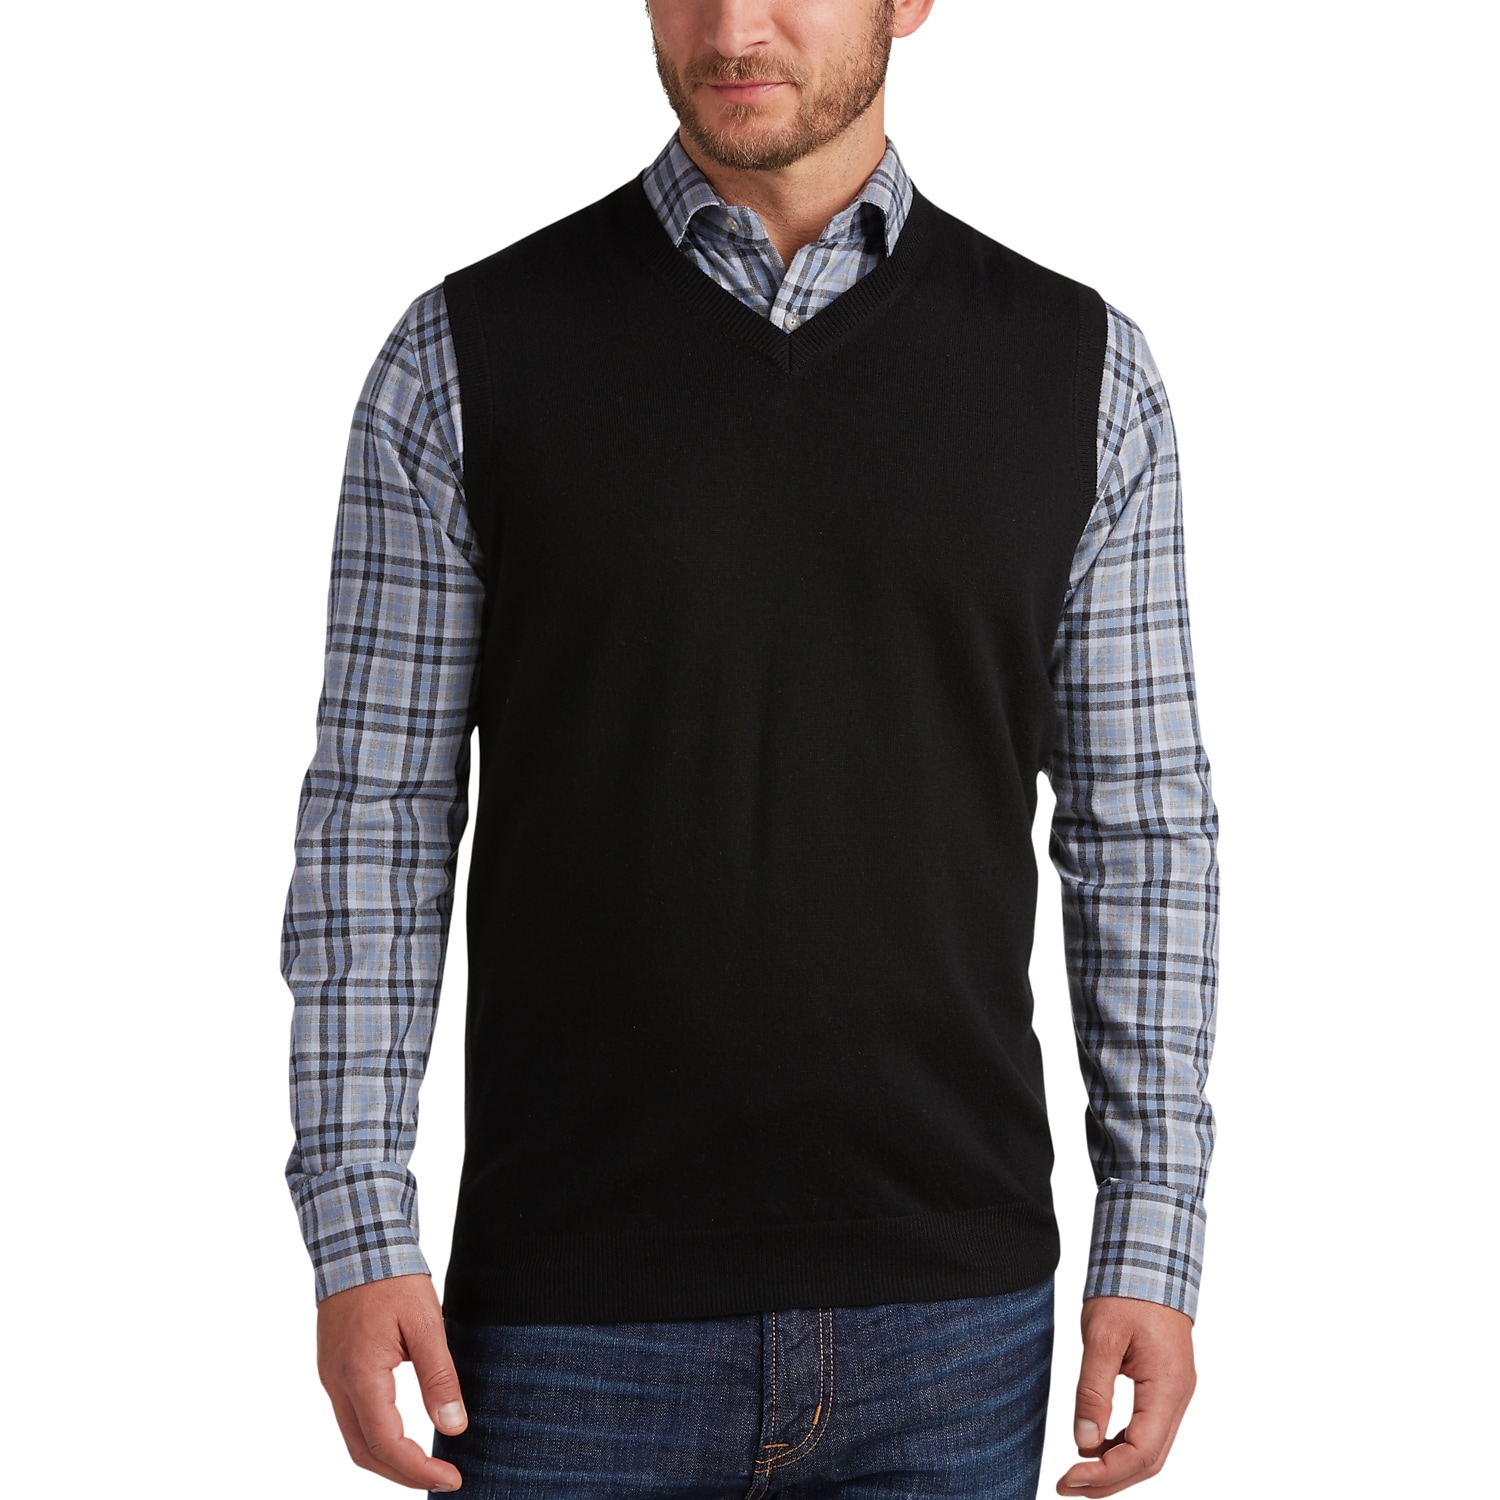 Joseph Abboud Black V-Neck Modern Fit Sweater Vest - Men's Sweater ...